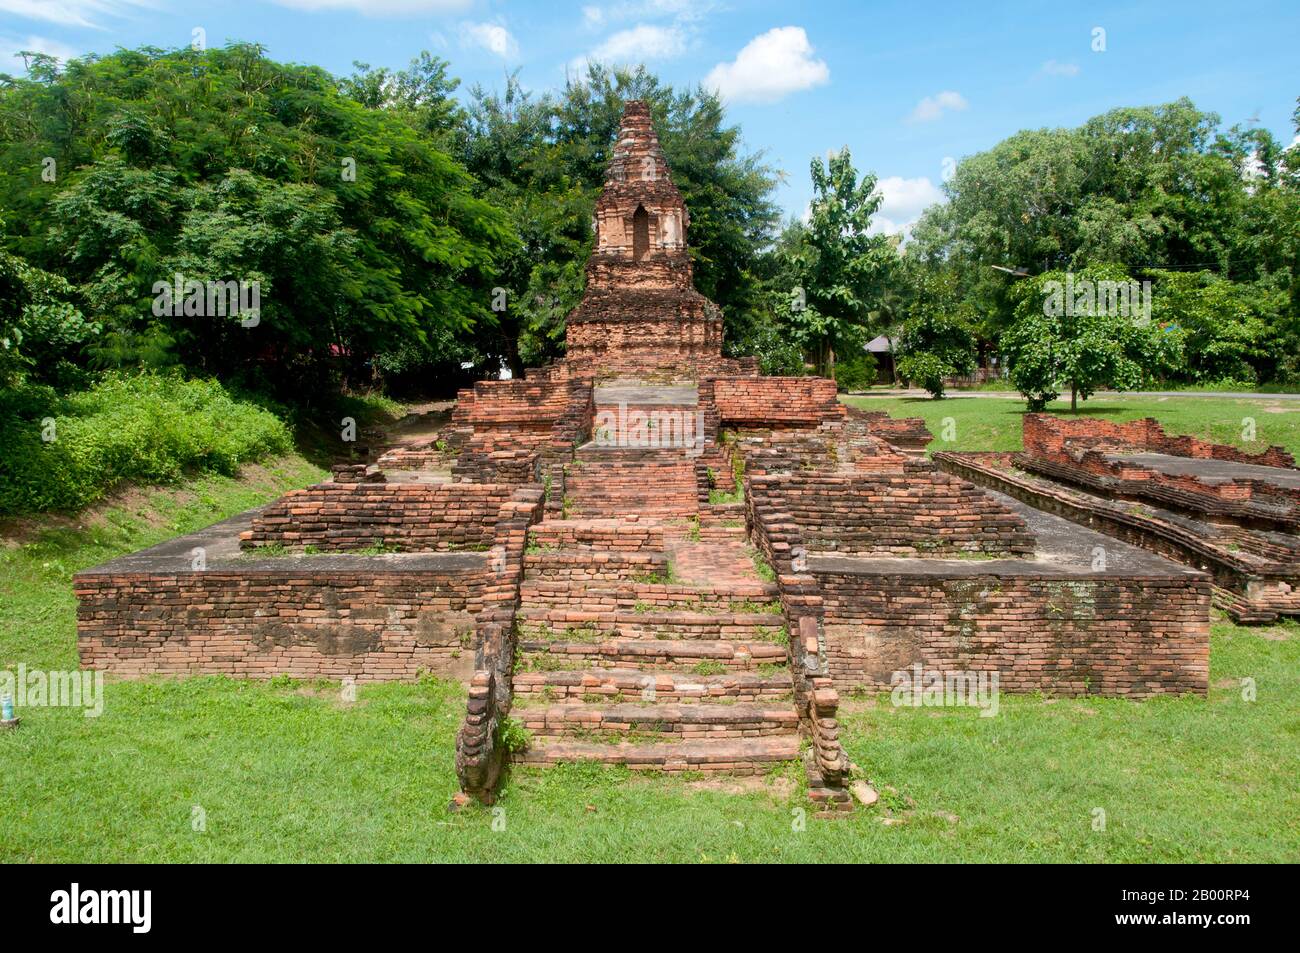 Thailand: Wat Pupia, Wiang Kum Kam, Chiang Mai. Im späten 13. Jahrhundert u.Z. aufgegeben, und jetzt in Ruinen, war Wiang Kum kam einst die Hauptstadt der nördlichen Region Thailands, Und liegt südlich von Chiang Mai./> Es wurde von König Mangrai zu einer Zeit im 13. Jahrhundert nach seinem Sieg über das Königreich Hariphunchai des modernen Lamphun gebaut. Doch nachdem die Stadt mehrere Male überflutet hatte, entschied sich Mangrai, die Hauptstadt seines Königreichs umzusiedeln und verlegte sie weiter nördlich am Fluss Ping zu einem Ort, der jetzt die Stadt Chiang Mai ist. Stockfoto